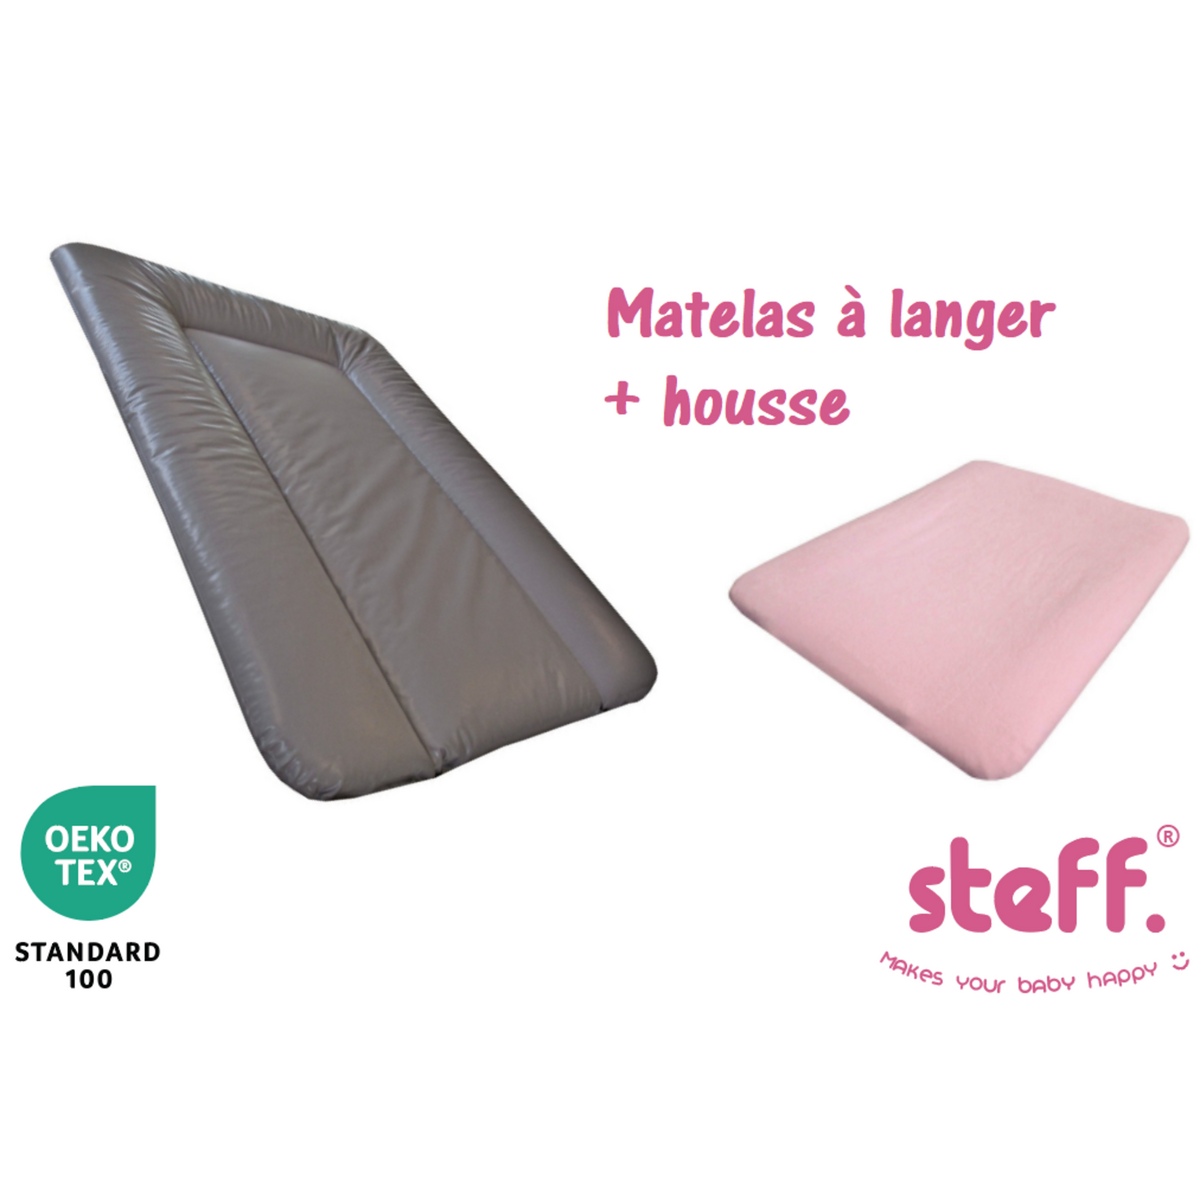  Steff - Matelas à langer taupe 50x70 cm + housse de matelas à langer rose pastel 50x70 cm - l'OEKO TEX label standard 100